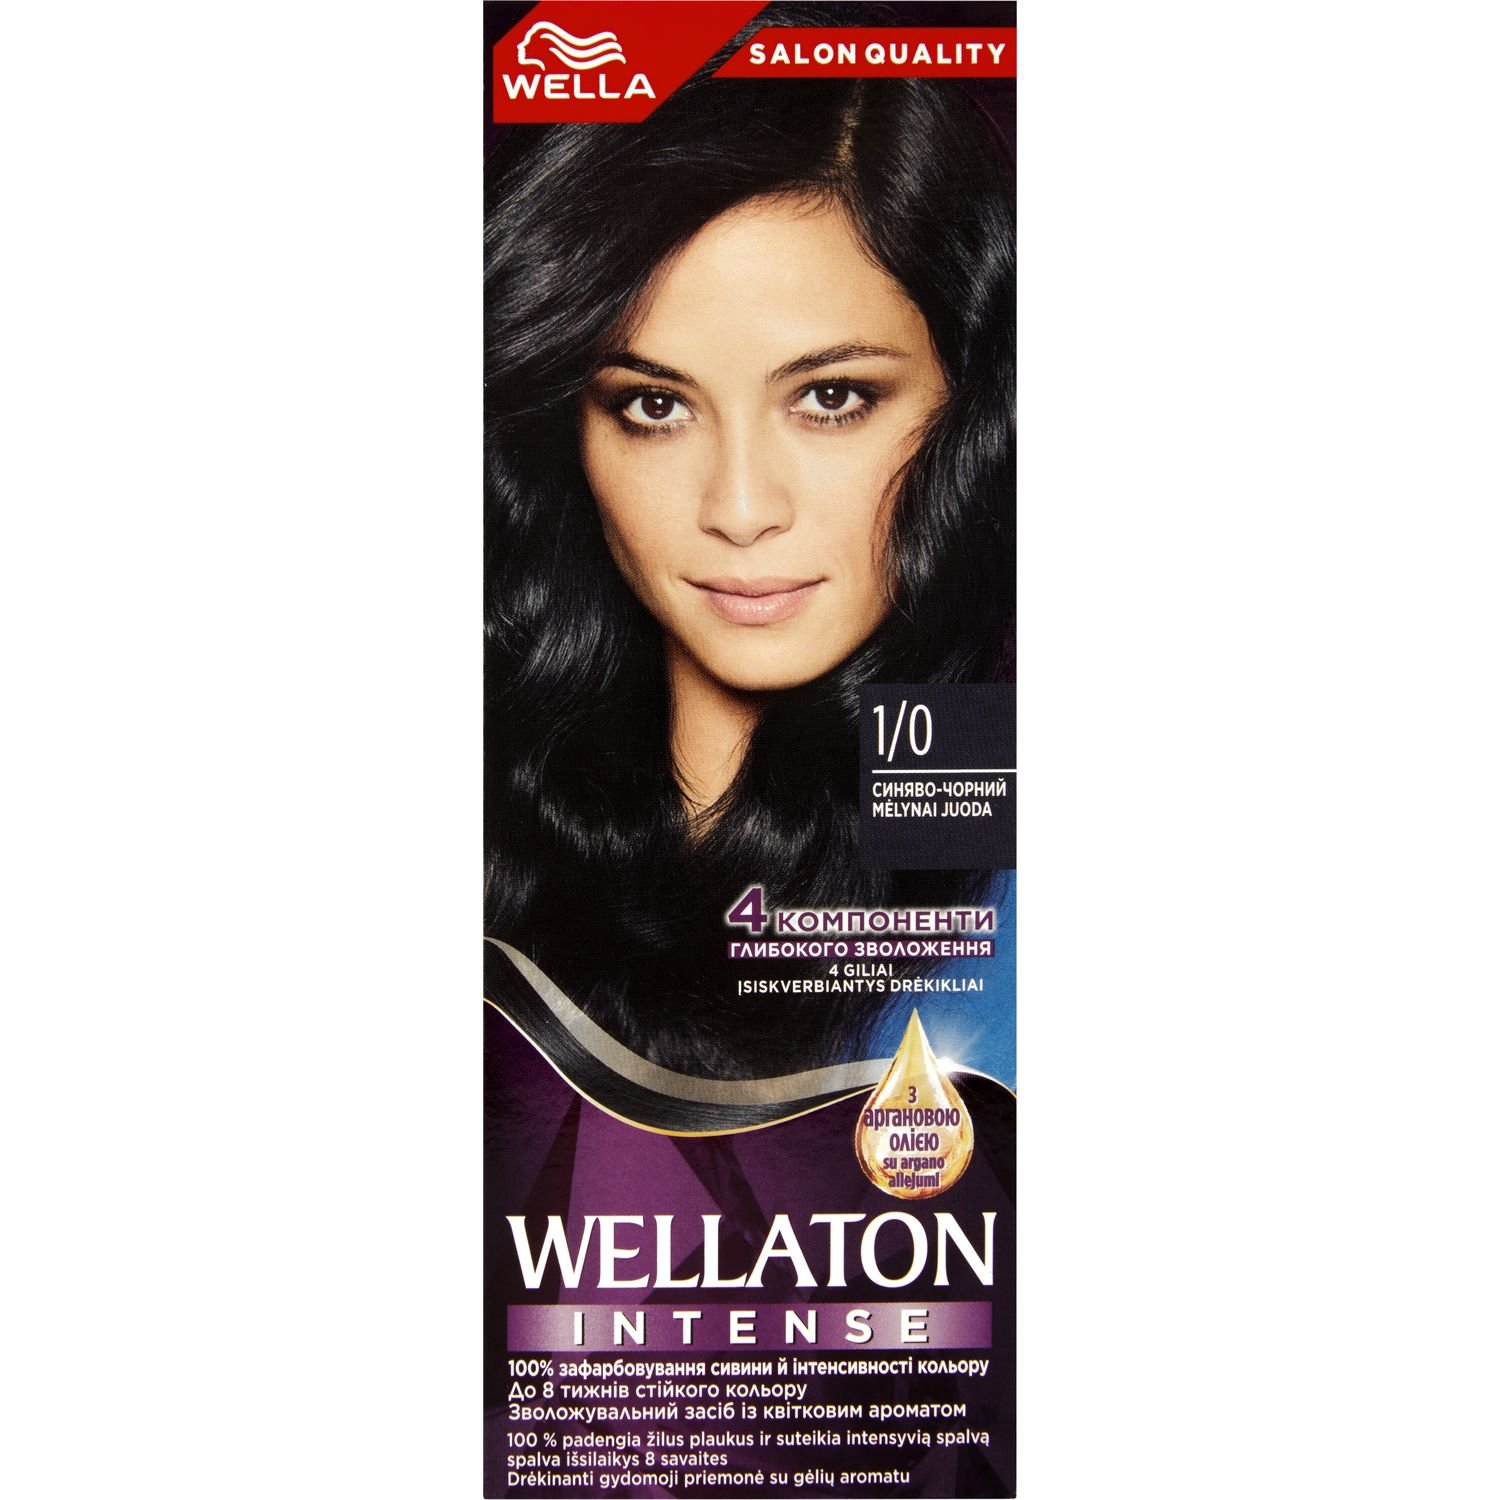 Інтенсивна крем-фарба для волосся Wellaton, відтінок 1/0 (Синяво-чорний), 110 мл - фото 1